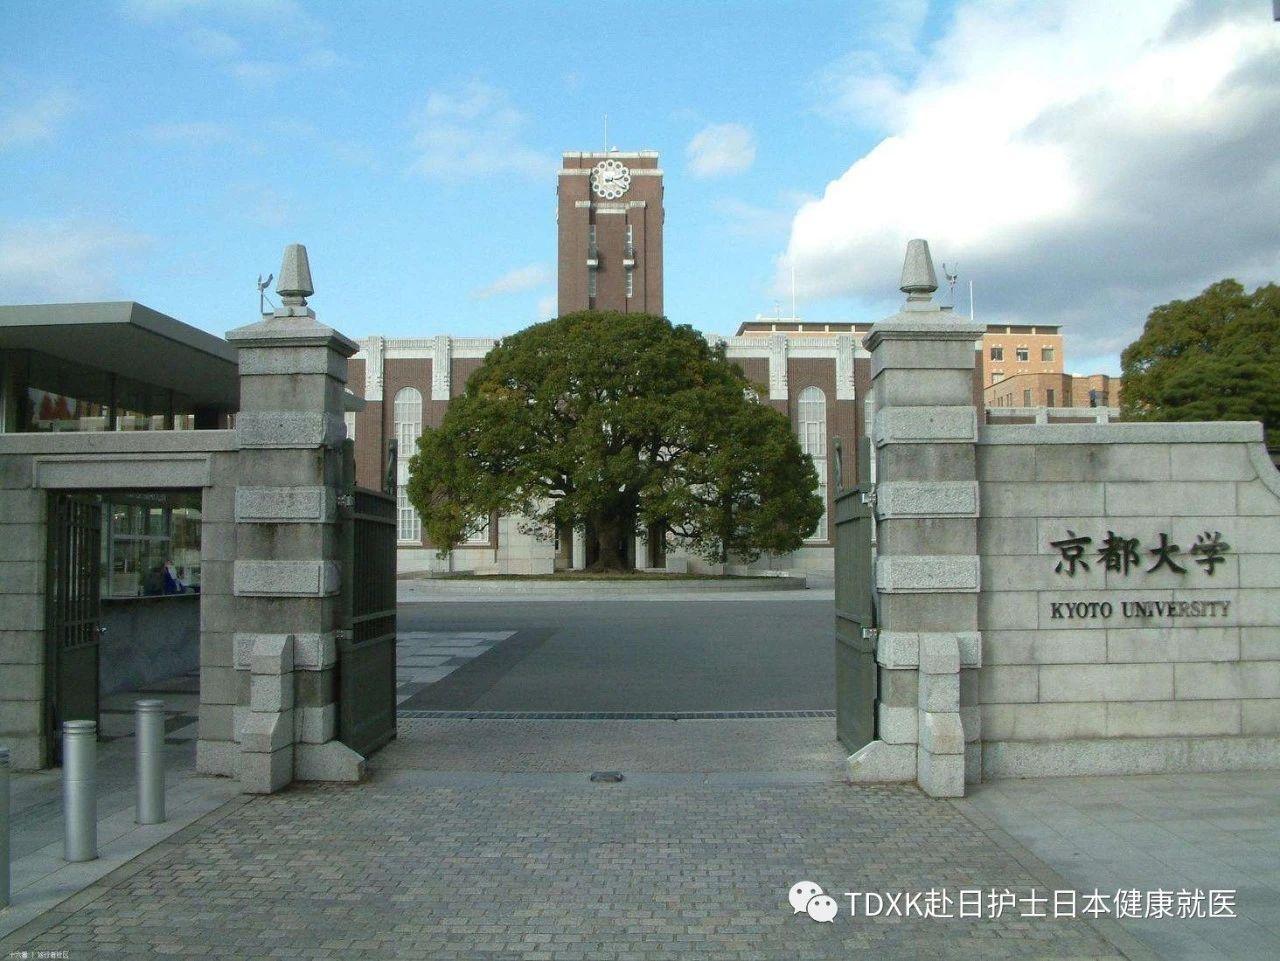 1位「东京大学」 2位「筑波大学」  3位「大阪大学」  4位「东北大学